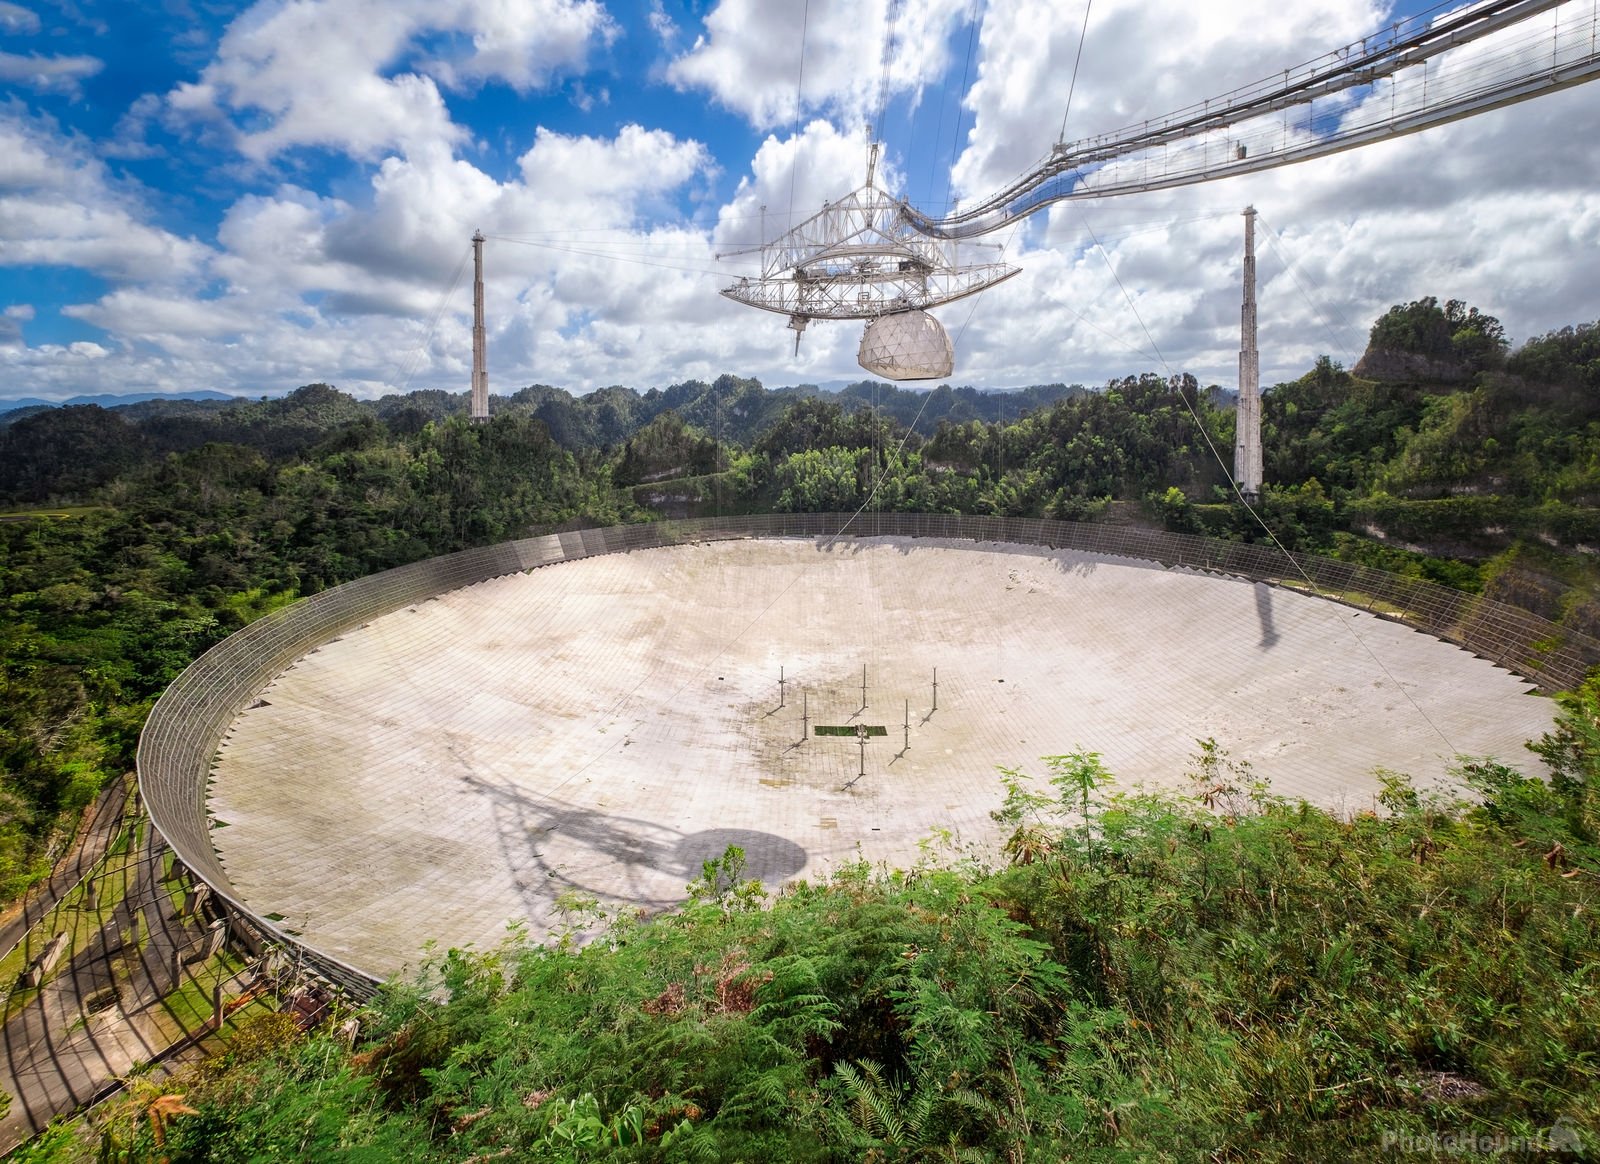 Image of Arecibo Observatory by Mark Iandolo